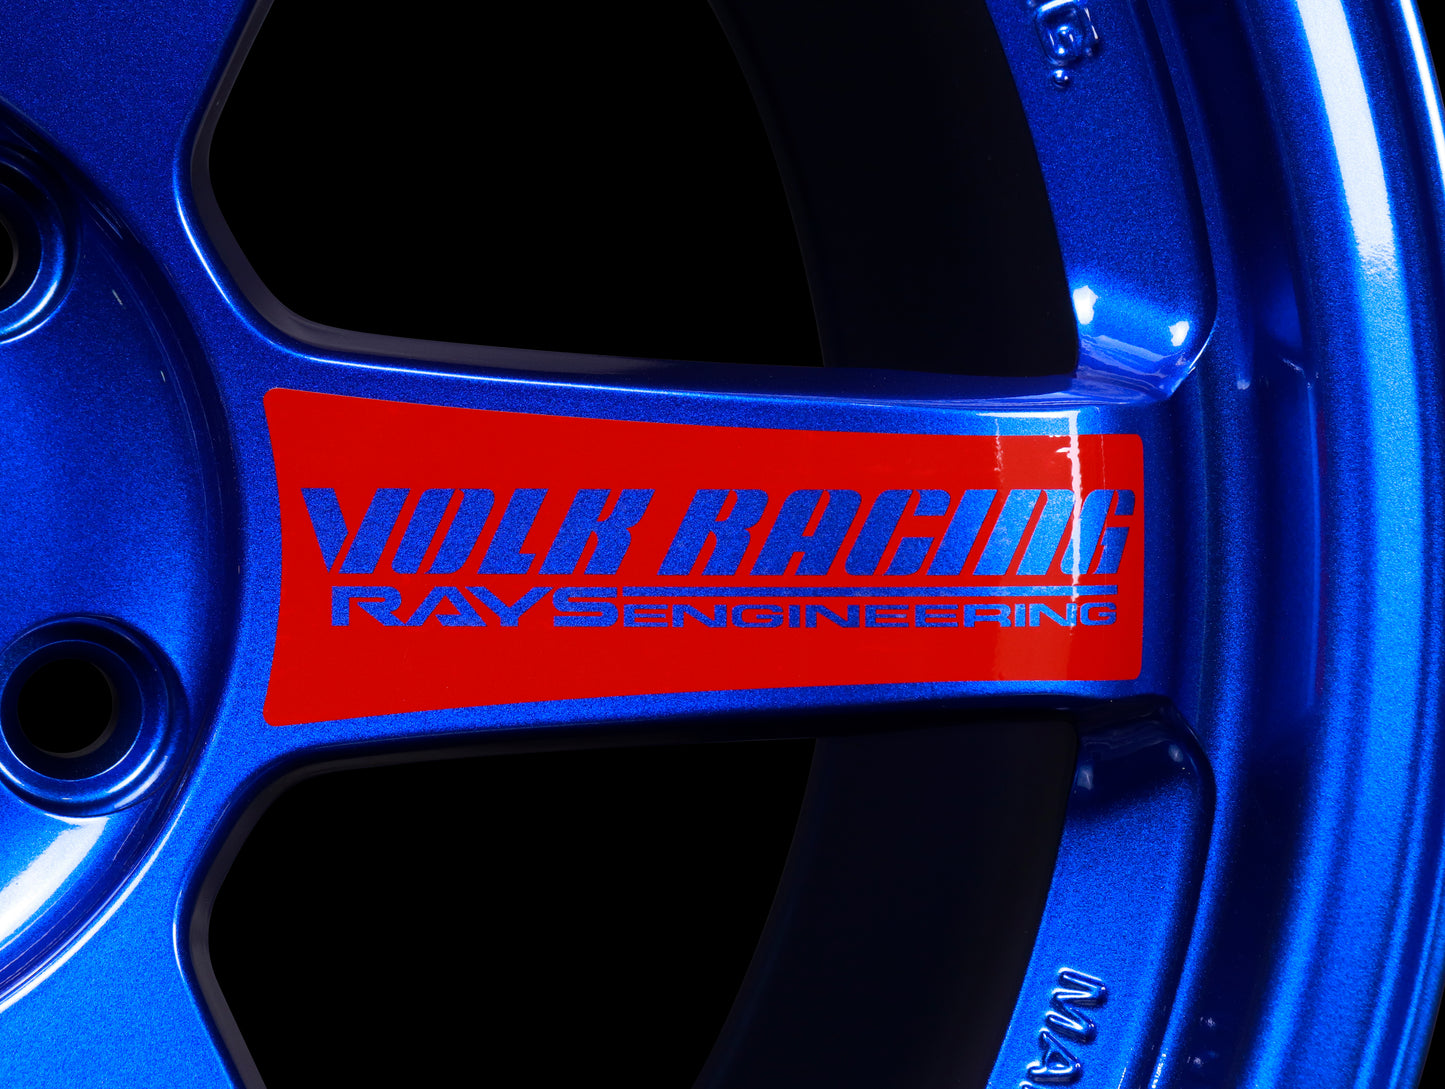 Volk Racing TE37SL Super Lap Edition - Hyper Blue 18x9.5 / 5x120